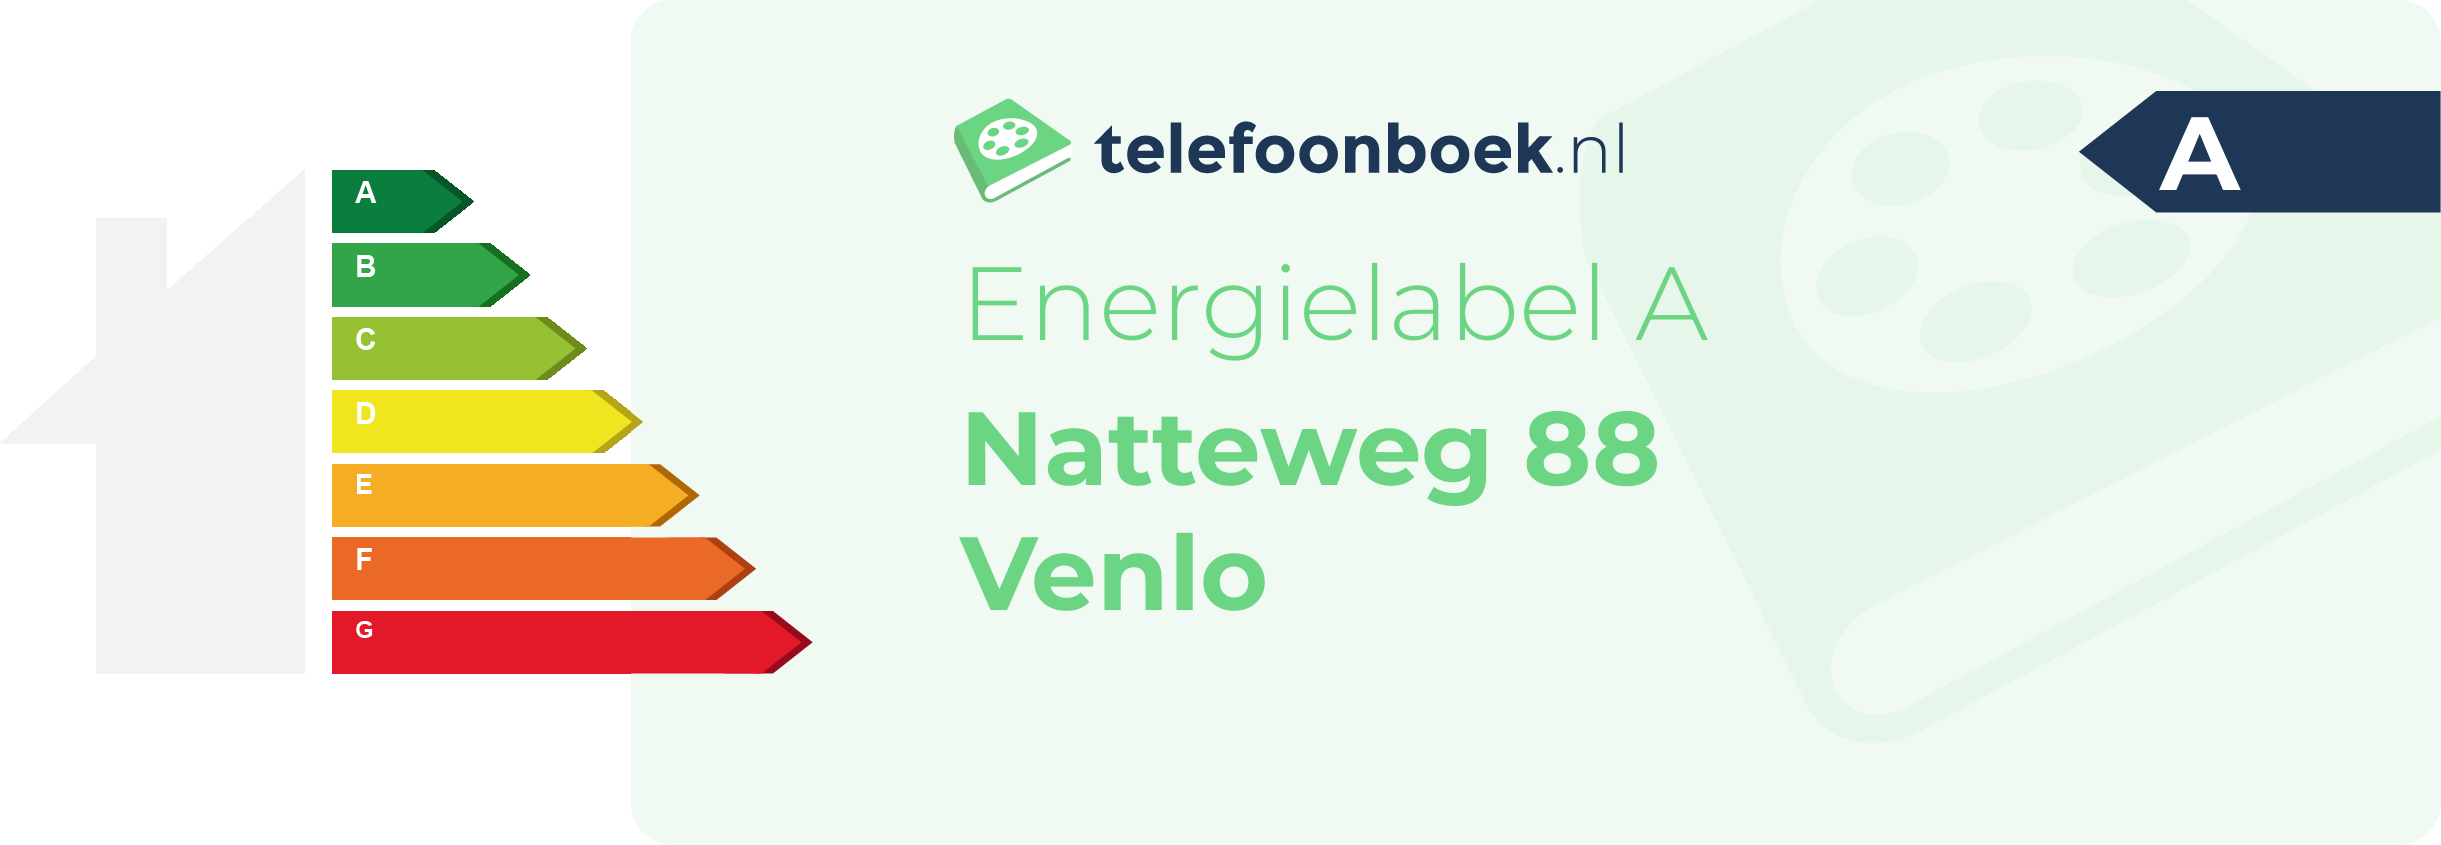 Energielabel Natteweg 88 Venlo